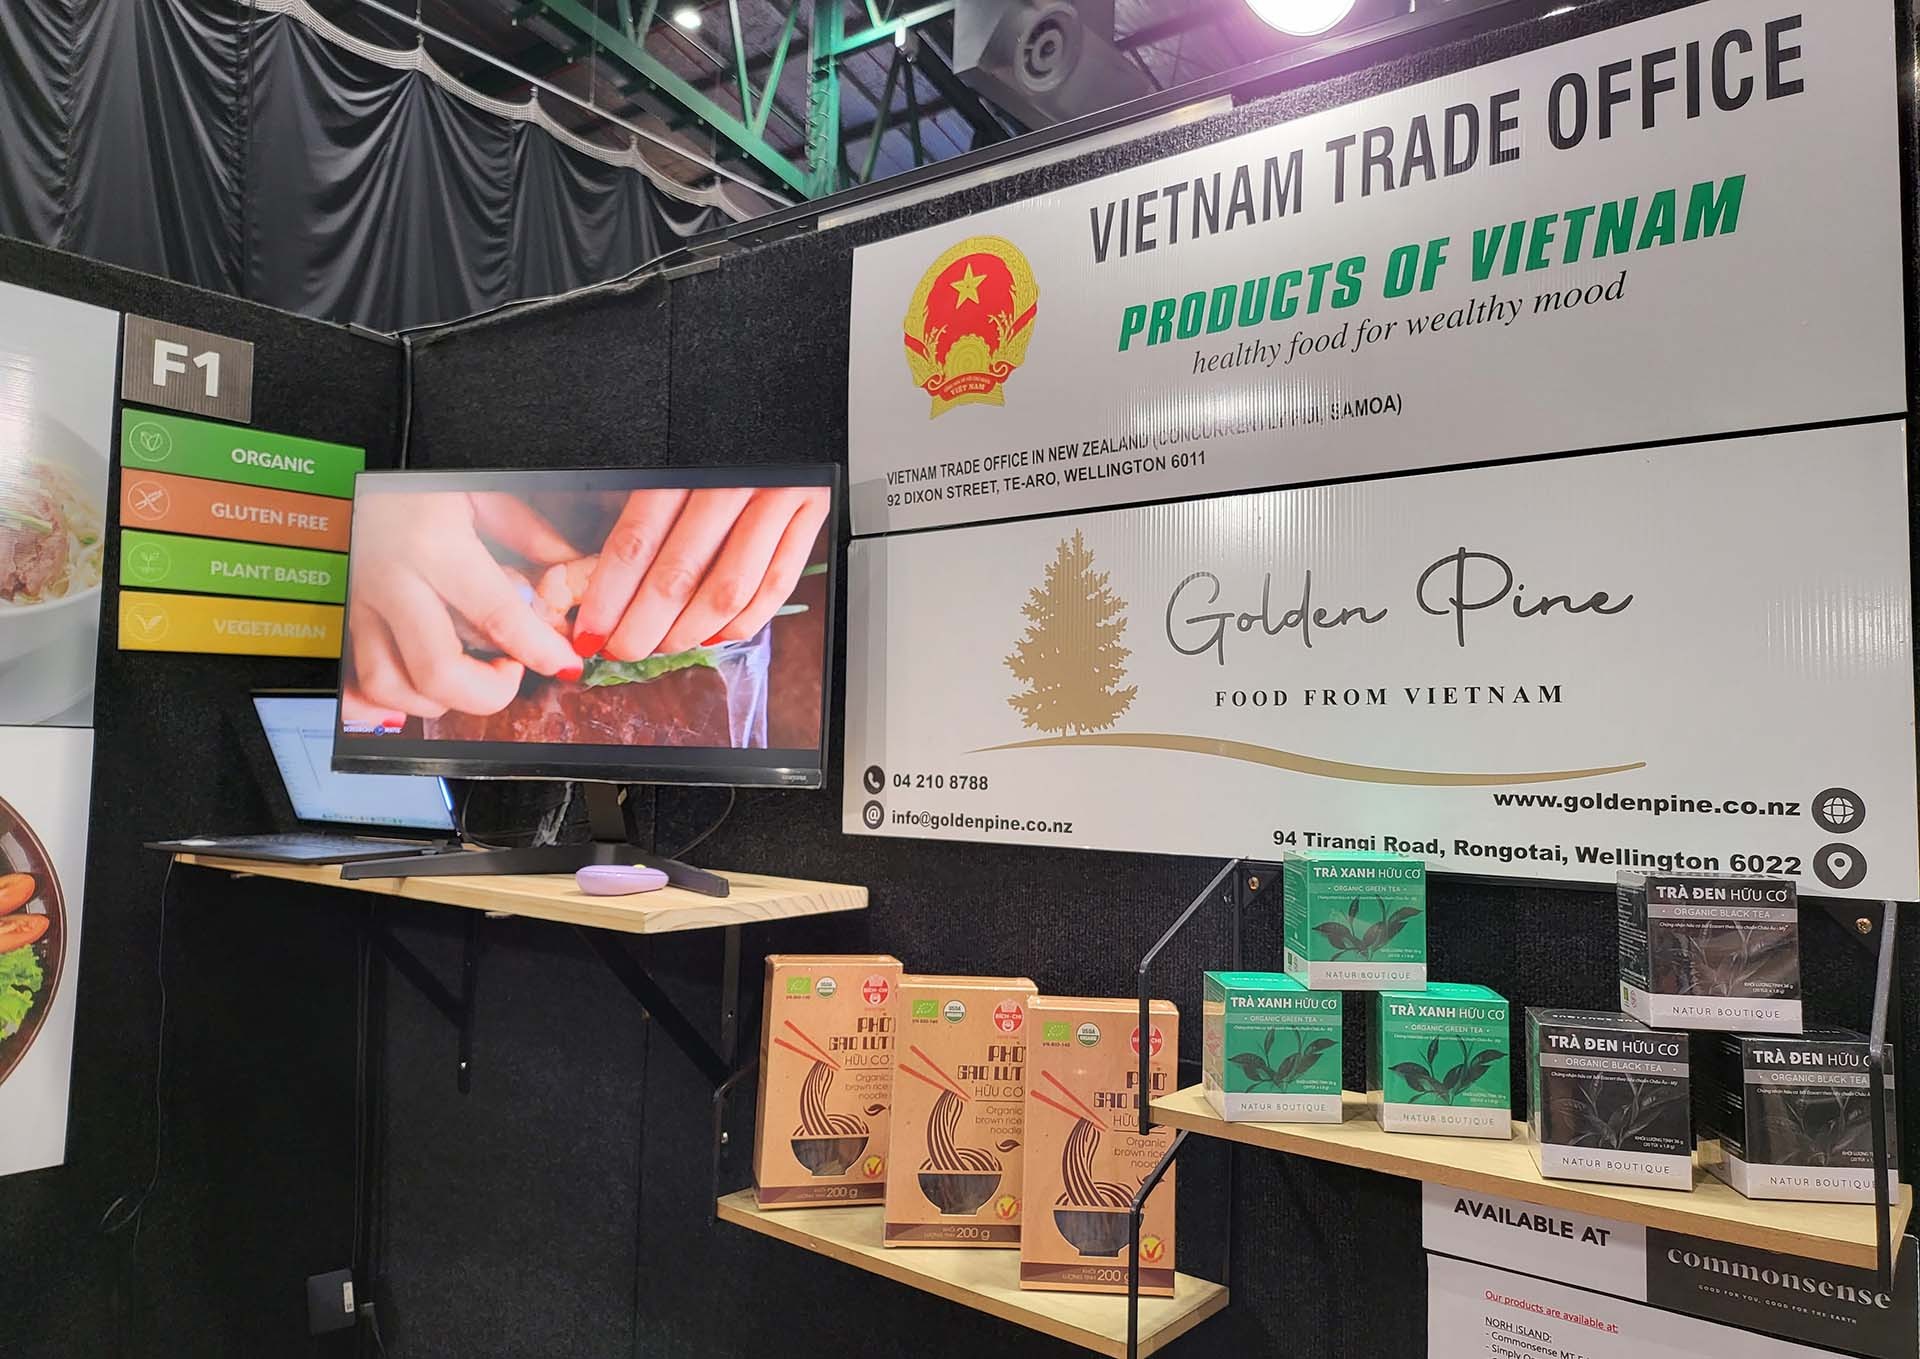 Gian hàng Việt Nam giới thiệu, quảng bá một số sản phẩm hữu cơ chất lượng cao